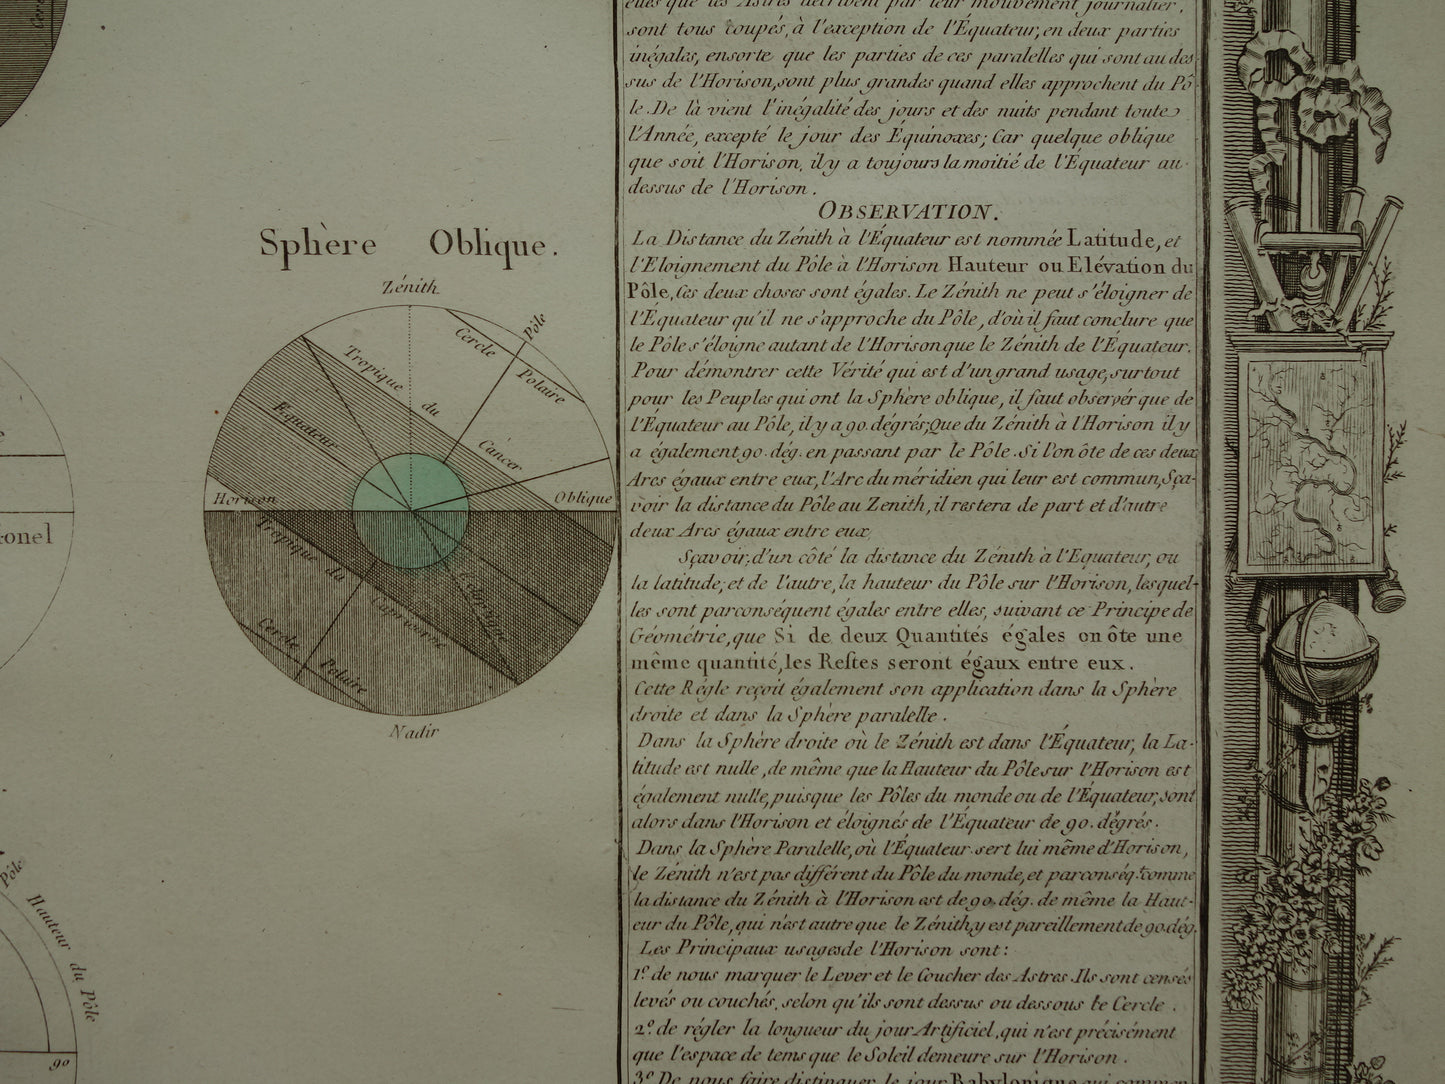 Antieke astronomie prent uit 1761 over de horizon oude illustratie meetkunde geografie Aarde Zon Zenit prints